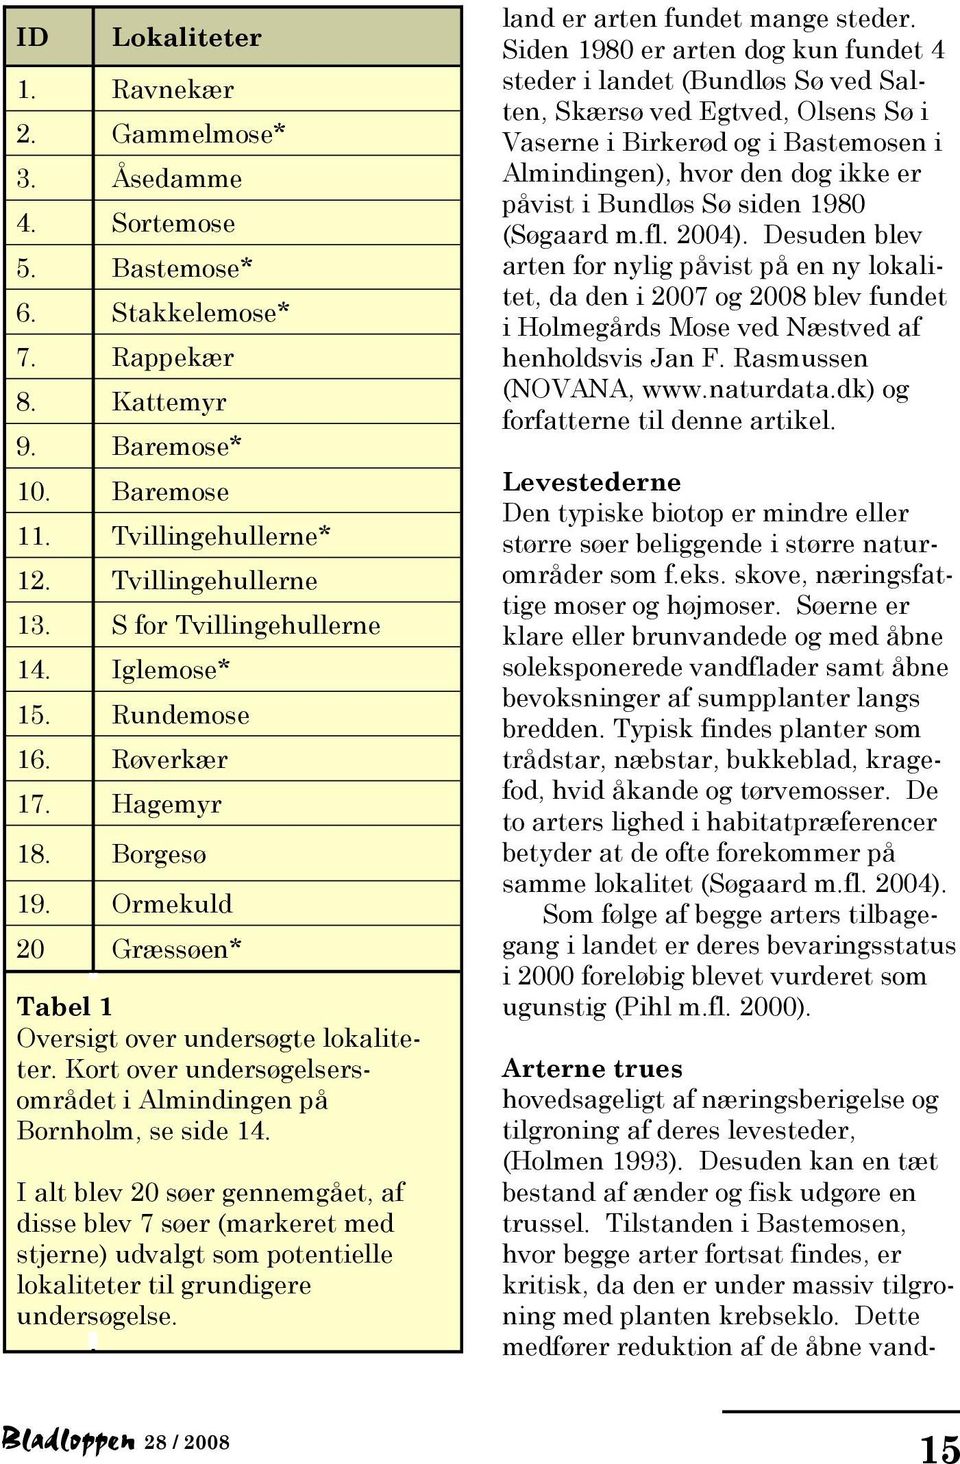 Kort over undersøgelsersområdet i Almindingen på Bornholm, se side 14.